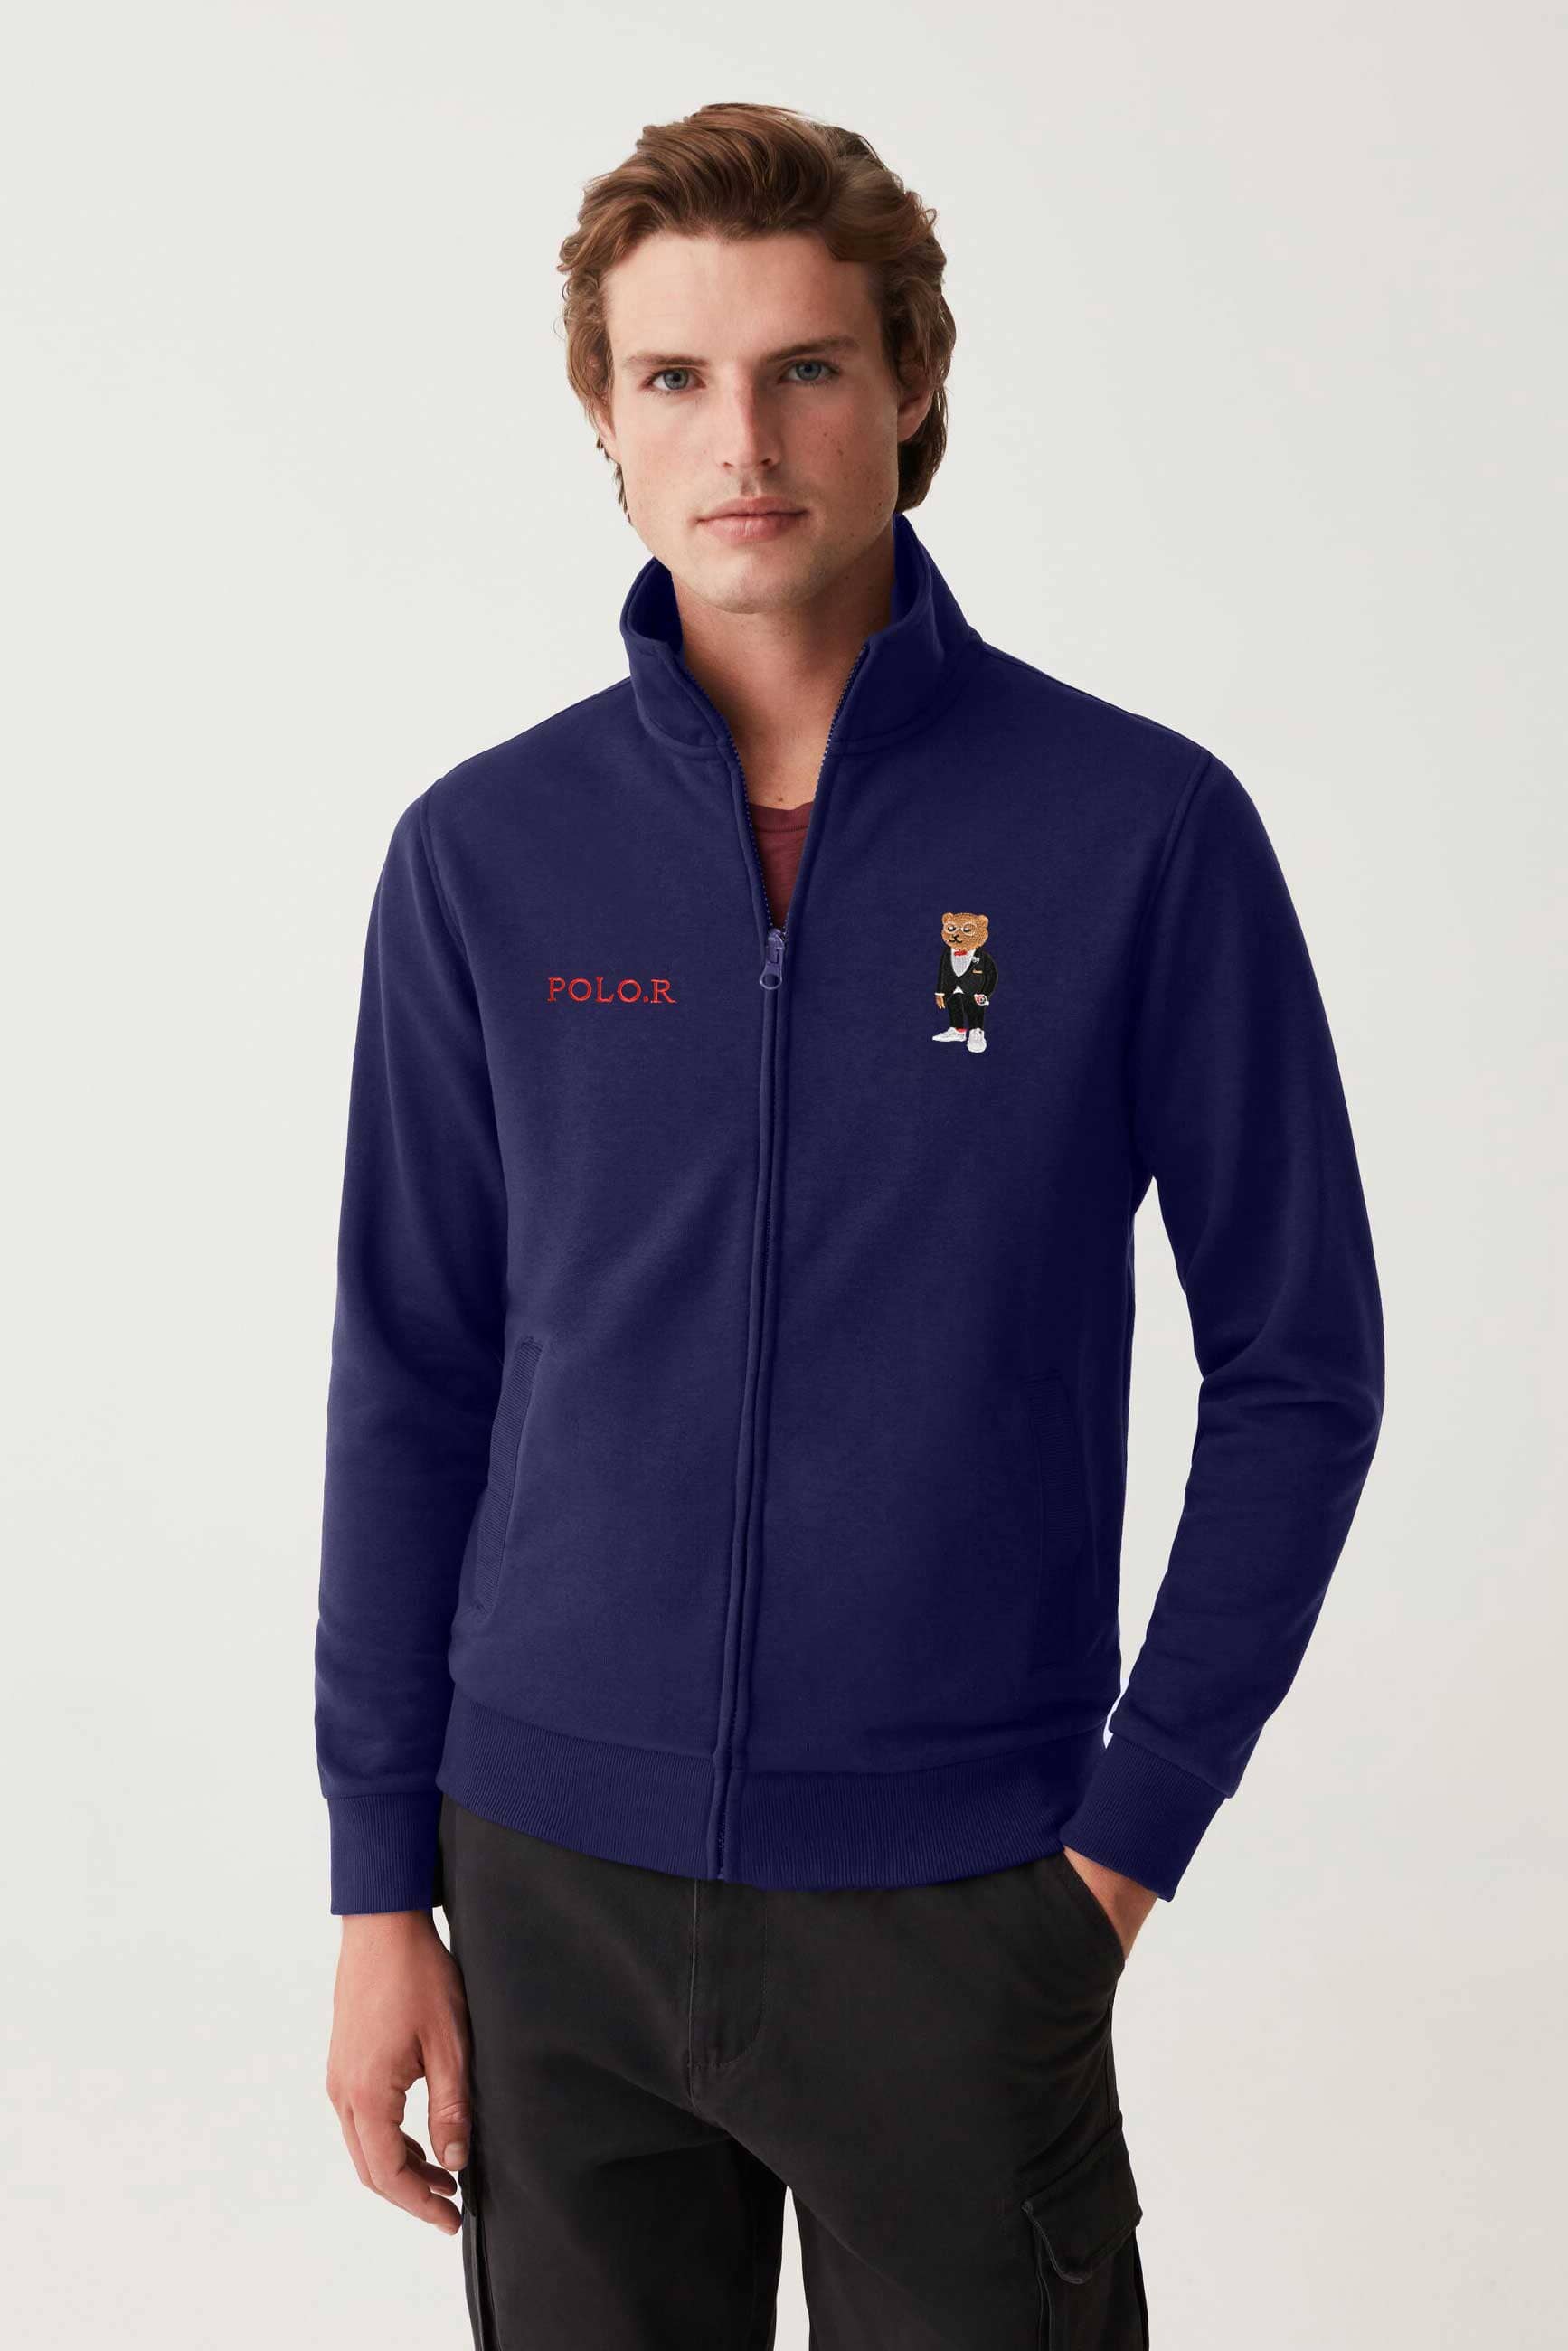 Polo Republica Men's Polo Bear Embroidered Fleece Zipper Jacket